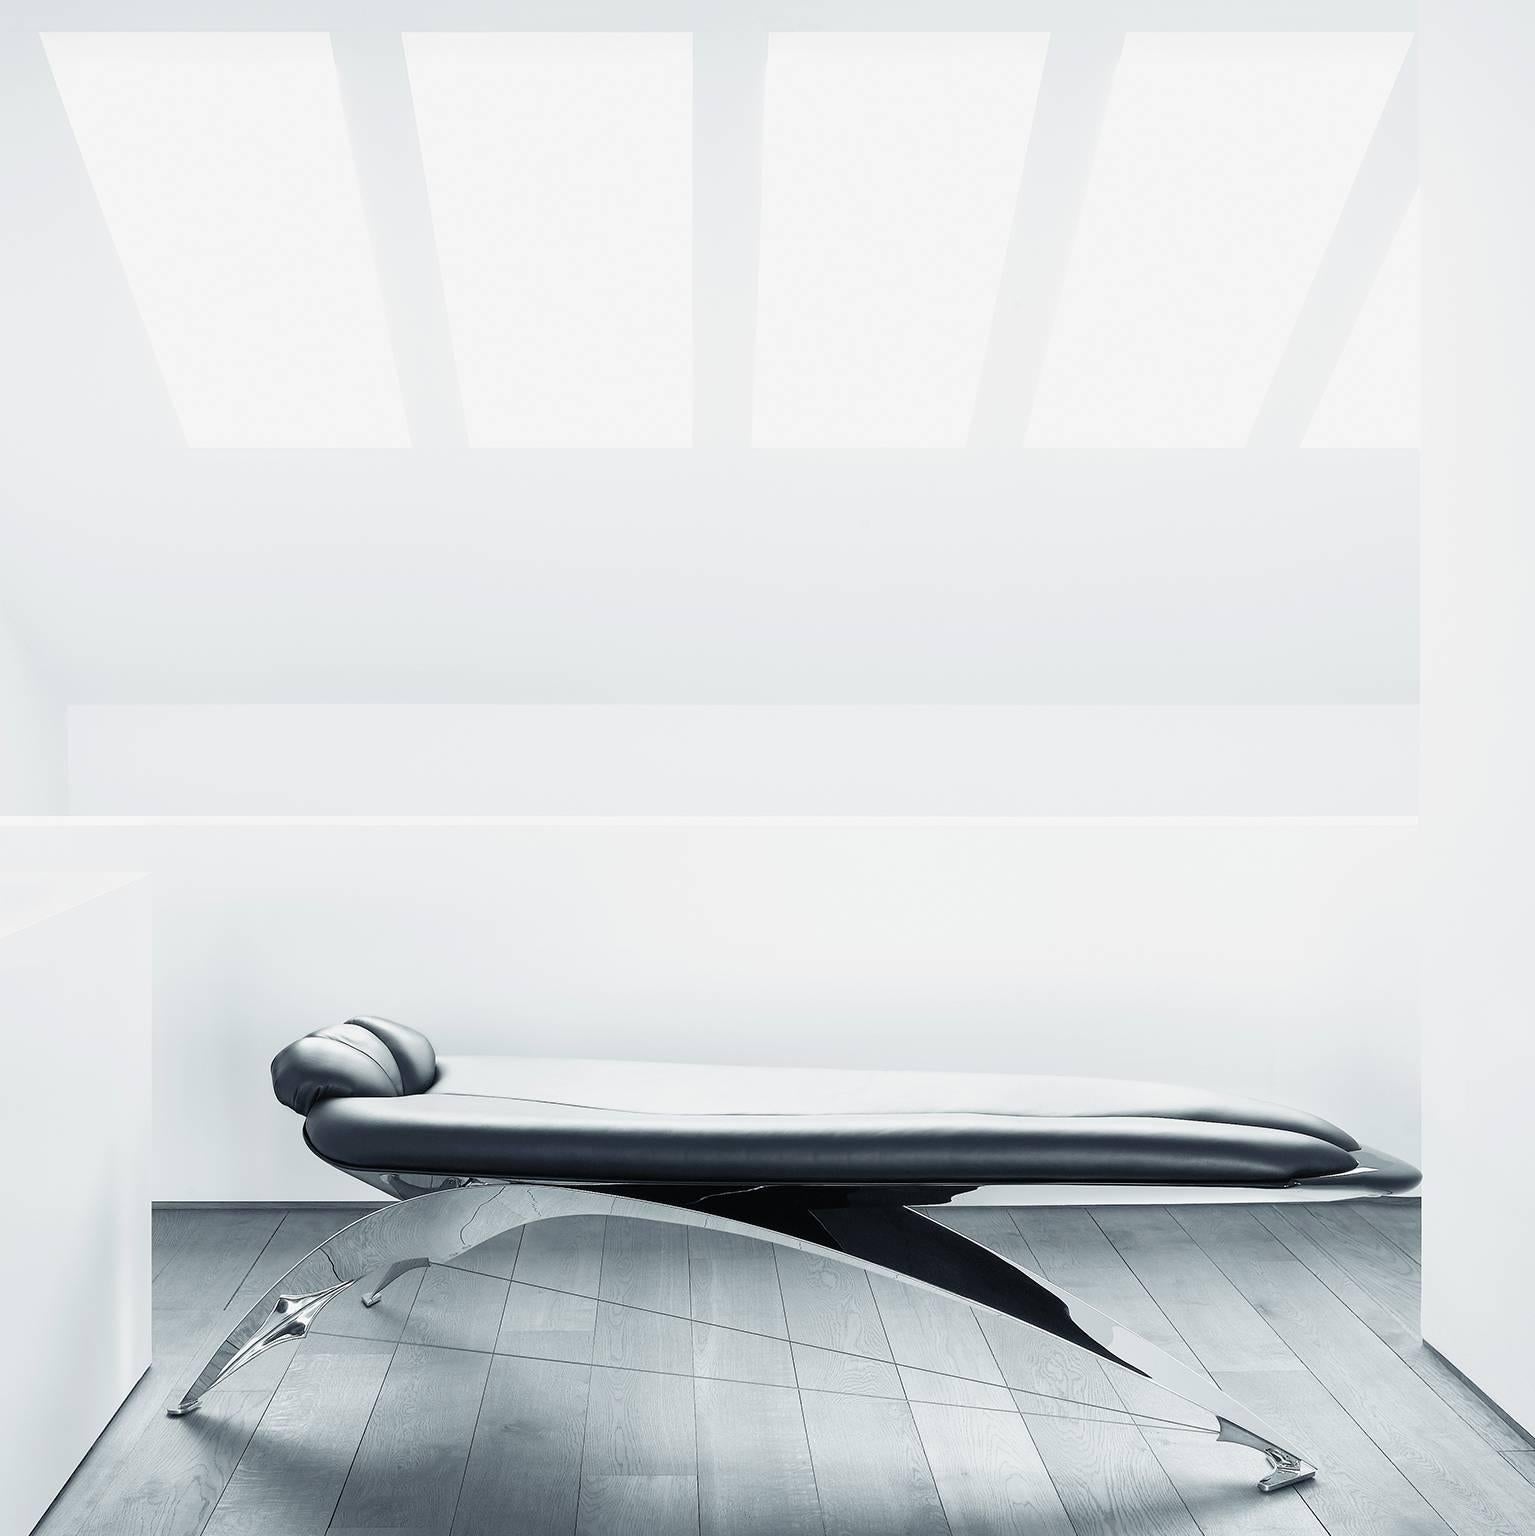 Der 1986 vom Architekten Santiago Calatrava entworfene Sessel präsentiert sich in einem schönen und futuristischen Look. Das Hauptstützelement besteht aus einem eleganten Chromstahlgestell, die Liegefläche und die Kopfkissen sind mit naturfarbenem